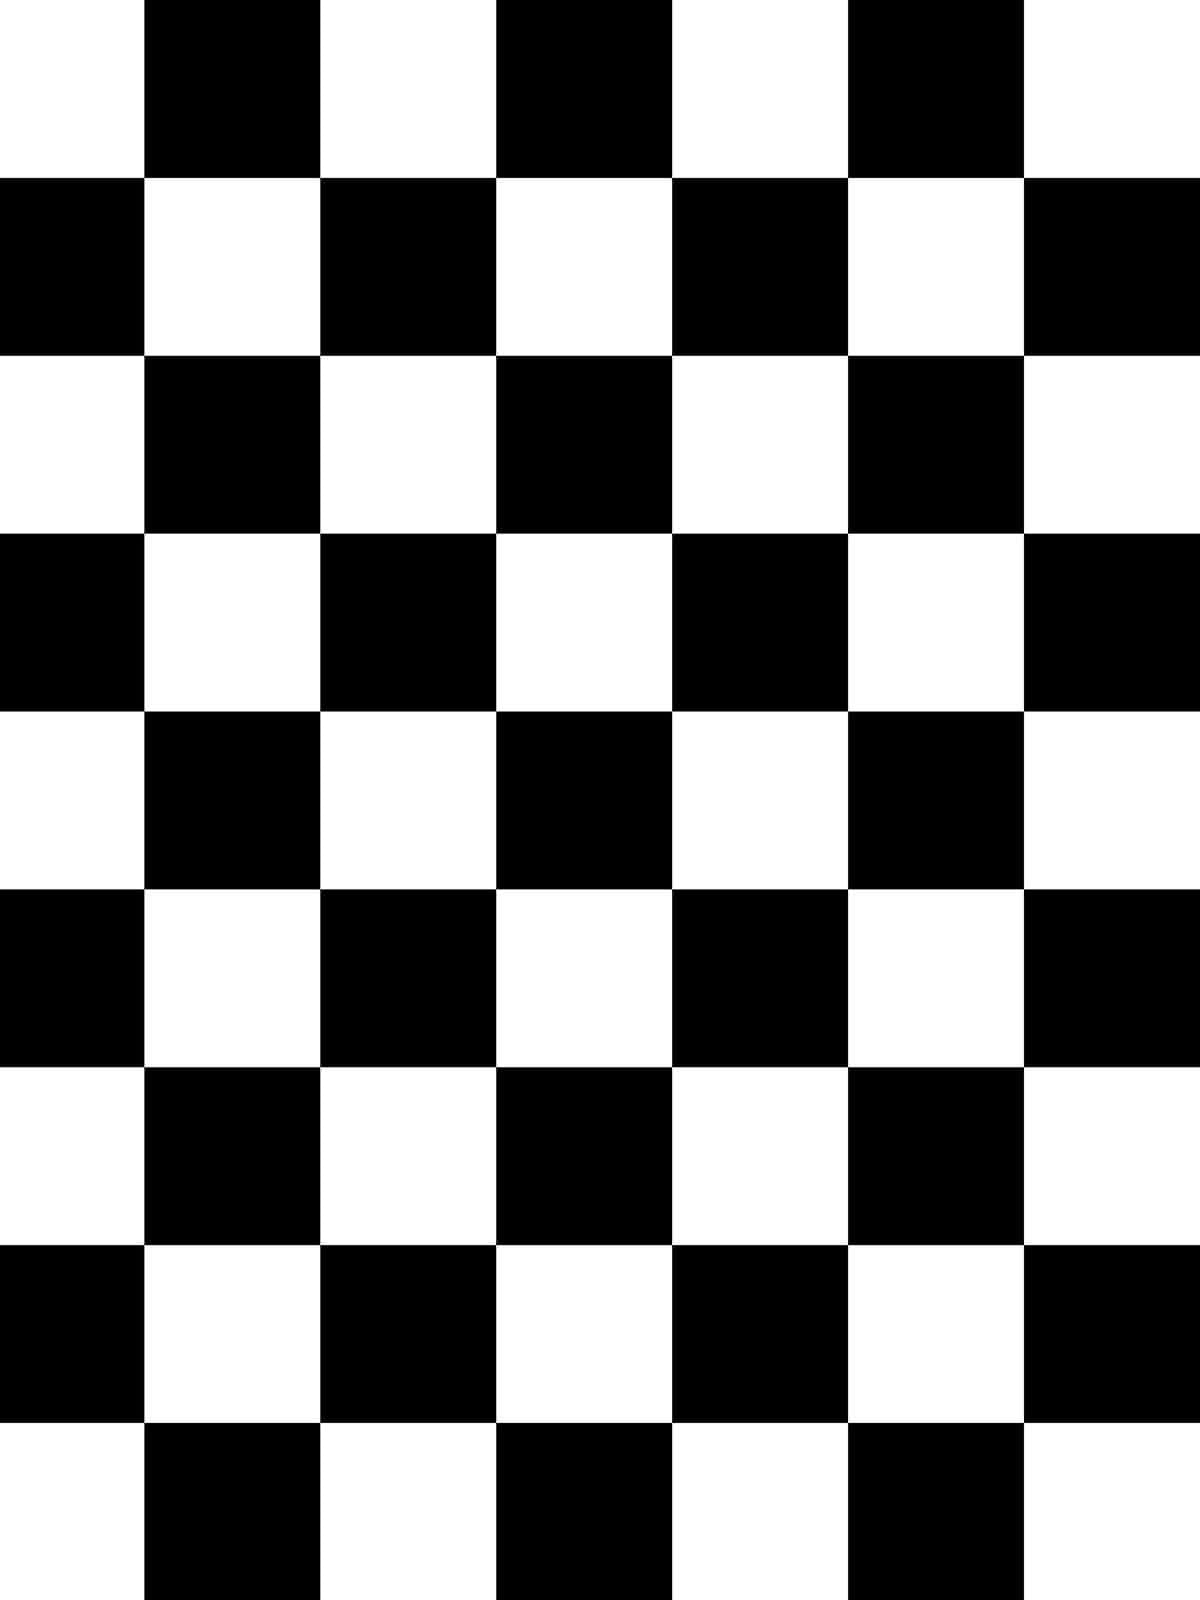 Checkers Board Empty Pattern.jpg Wallpaper